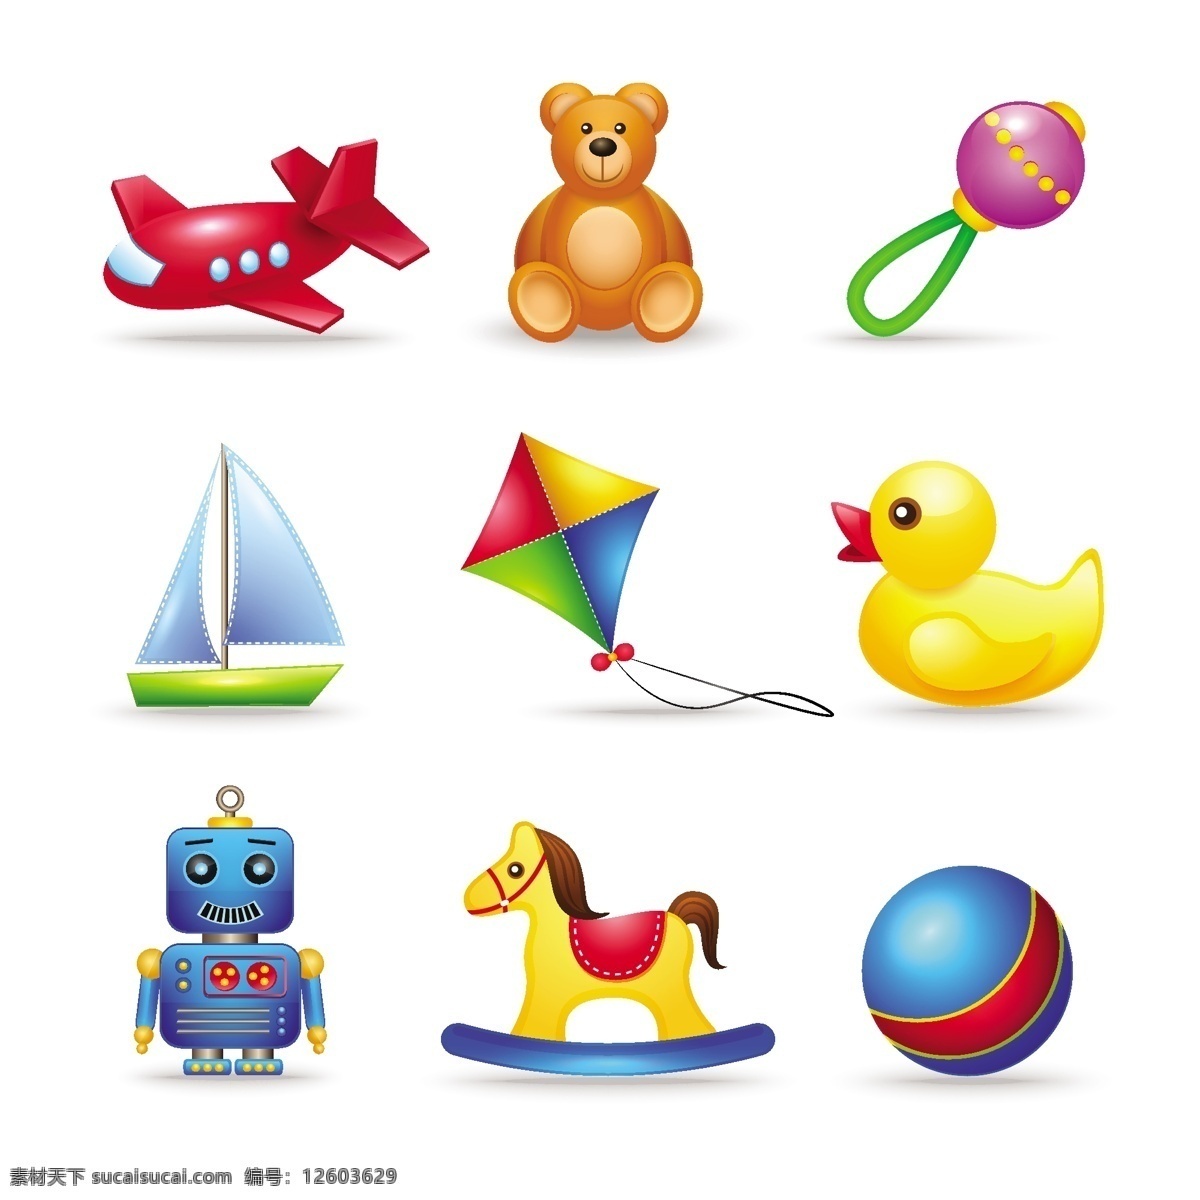 儿童玩具 矢量 图标 广告 背景 背景素材 素材免费下载 儿童 玩具 鸭子